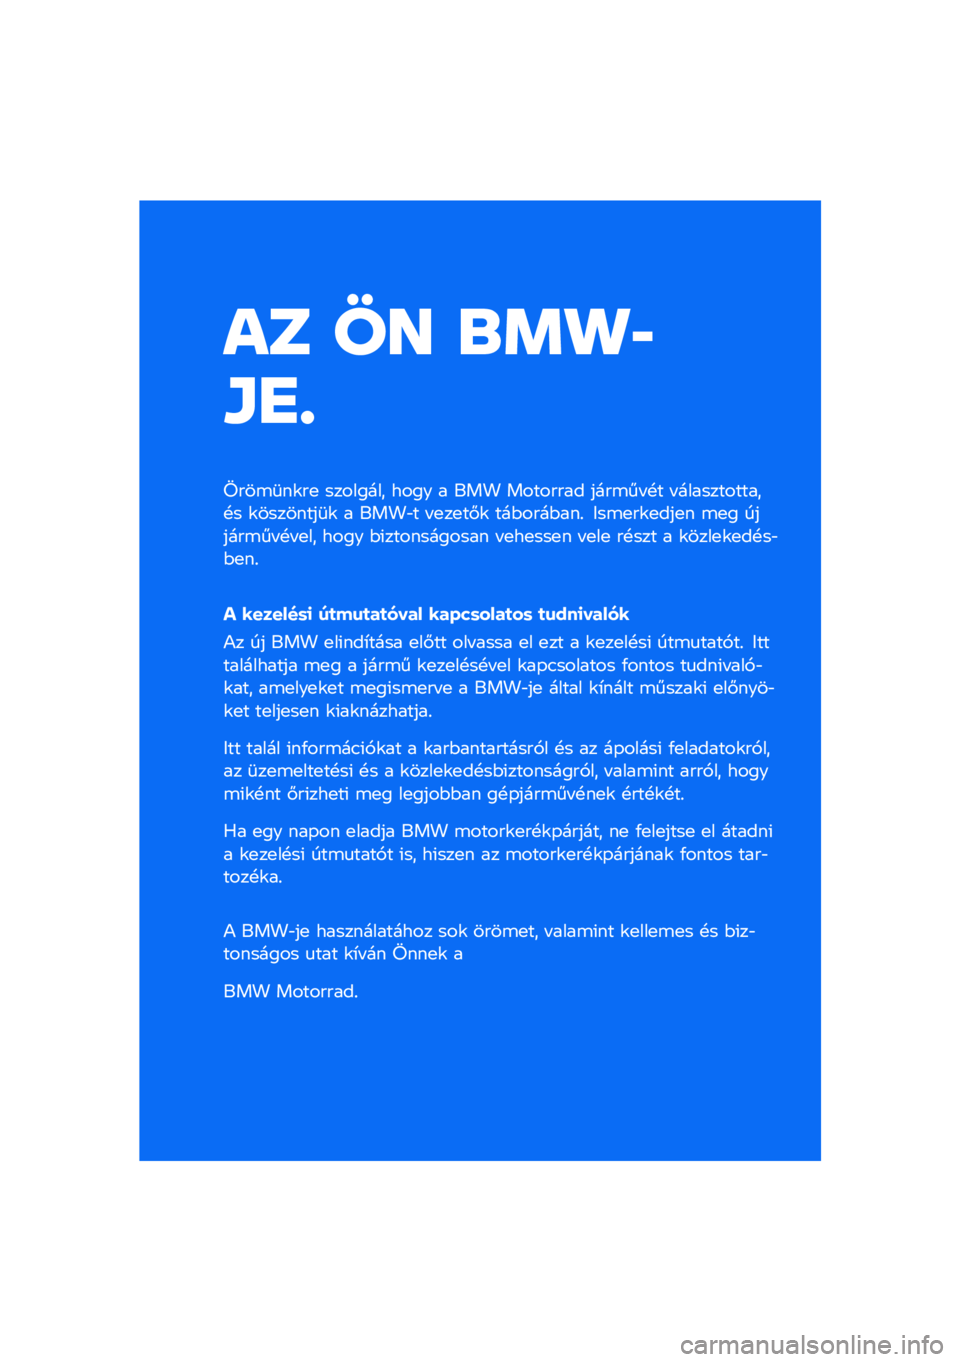 BMW MOTORRAD F 900 R 2021  Kezelési útmutató (in Hungarian) �� �� �\b�	�
�
�\f�
�
����\b�	��\f��
 �������� ���� � ��� �������� ����\b�� �!� � ������������!� �\f��������	�\f � ����"� � �
��
��#�\